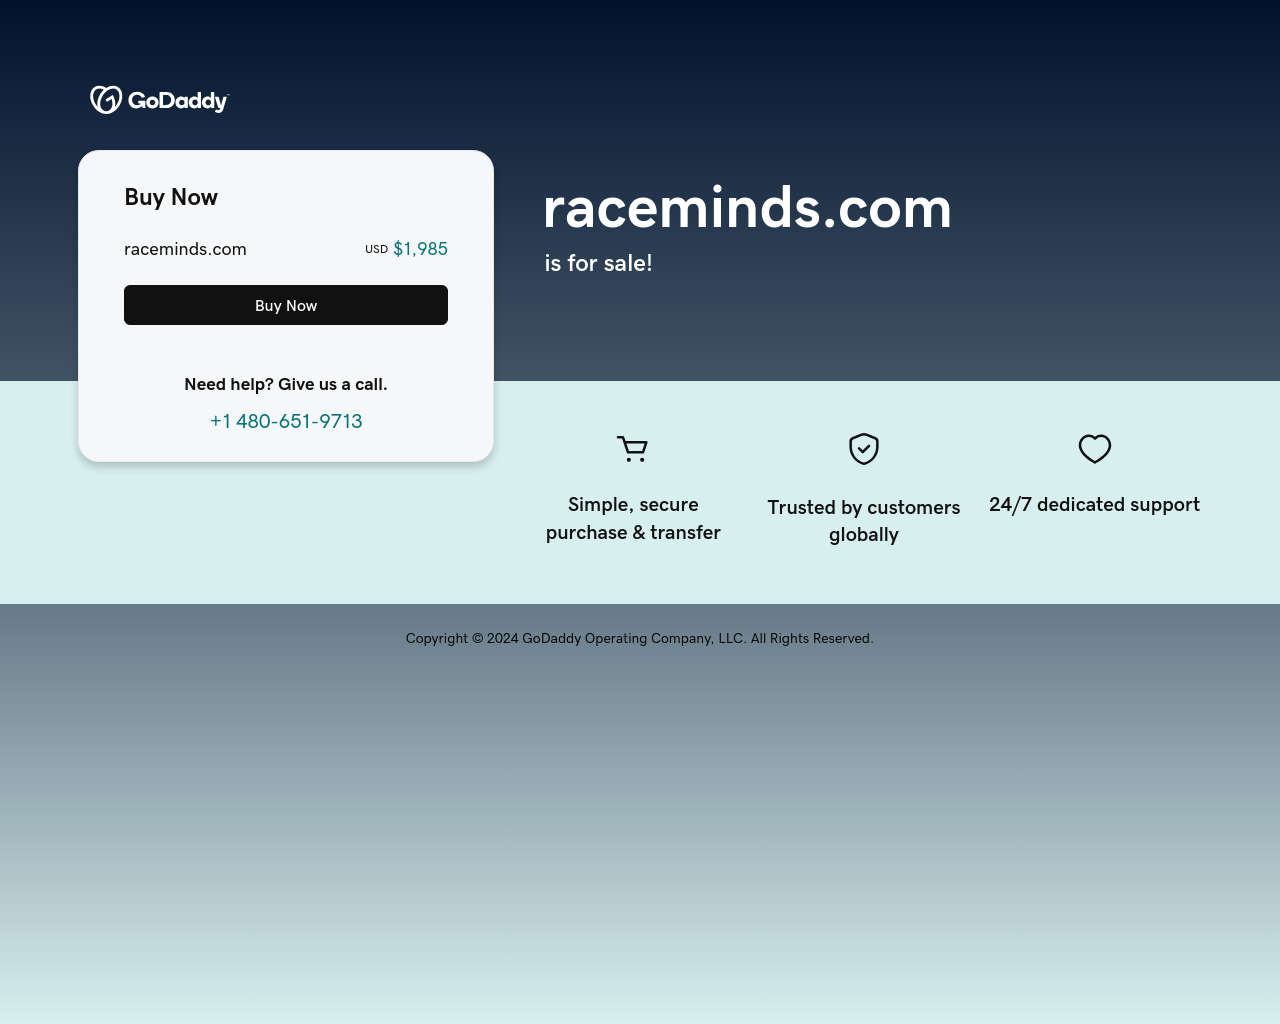 raceminds.com